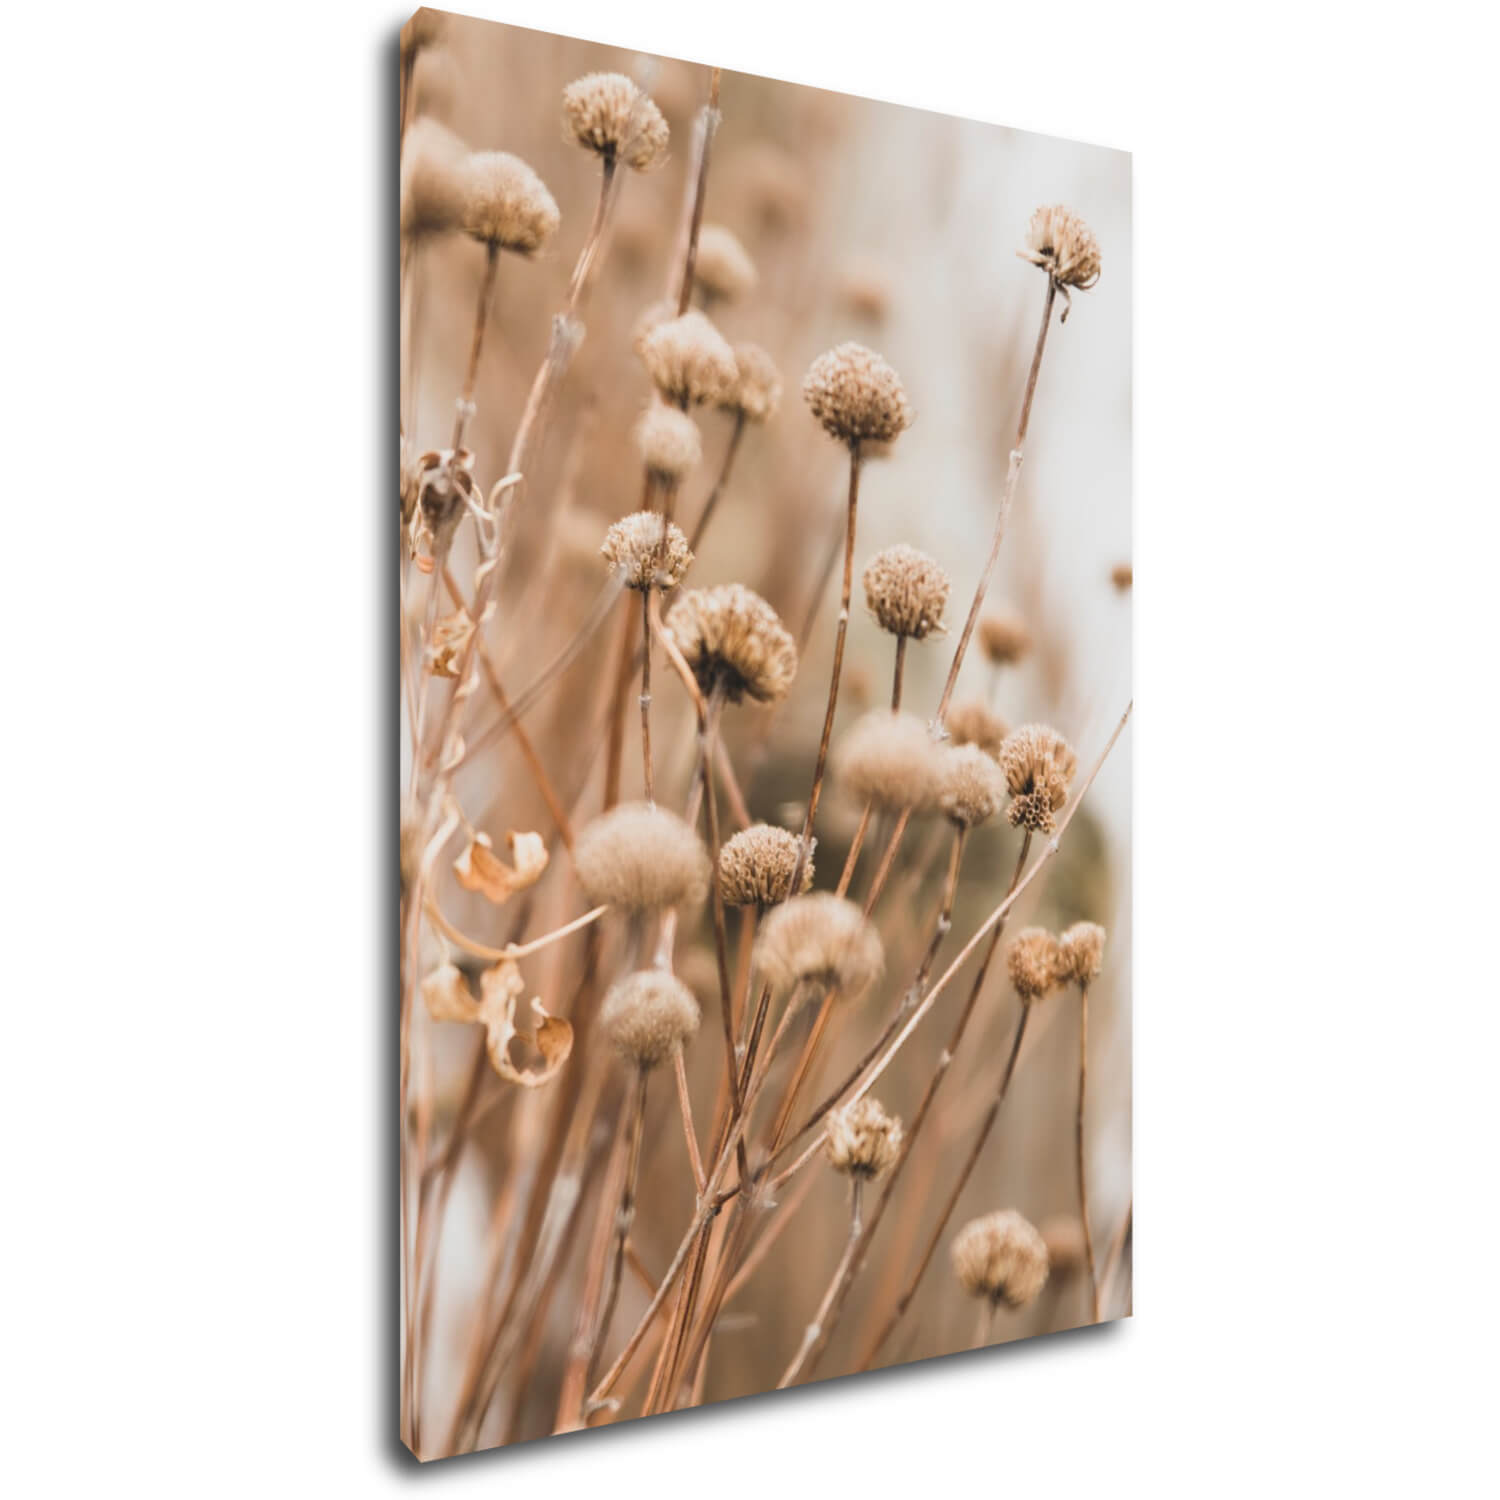 Obraz Skandinávský styl suchá tráva - 50 x 70 cm